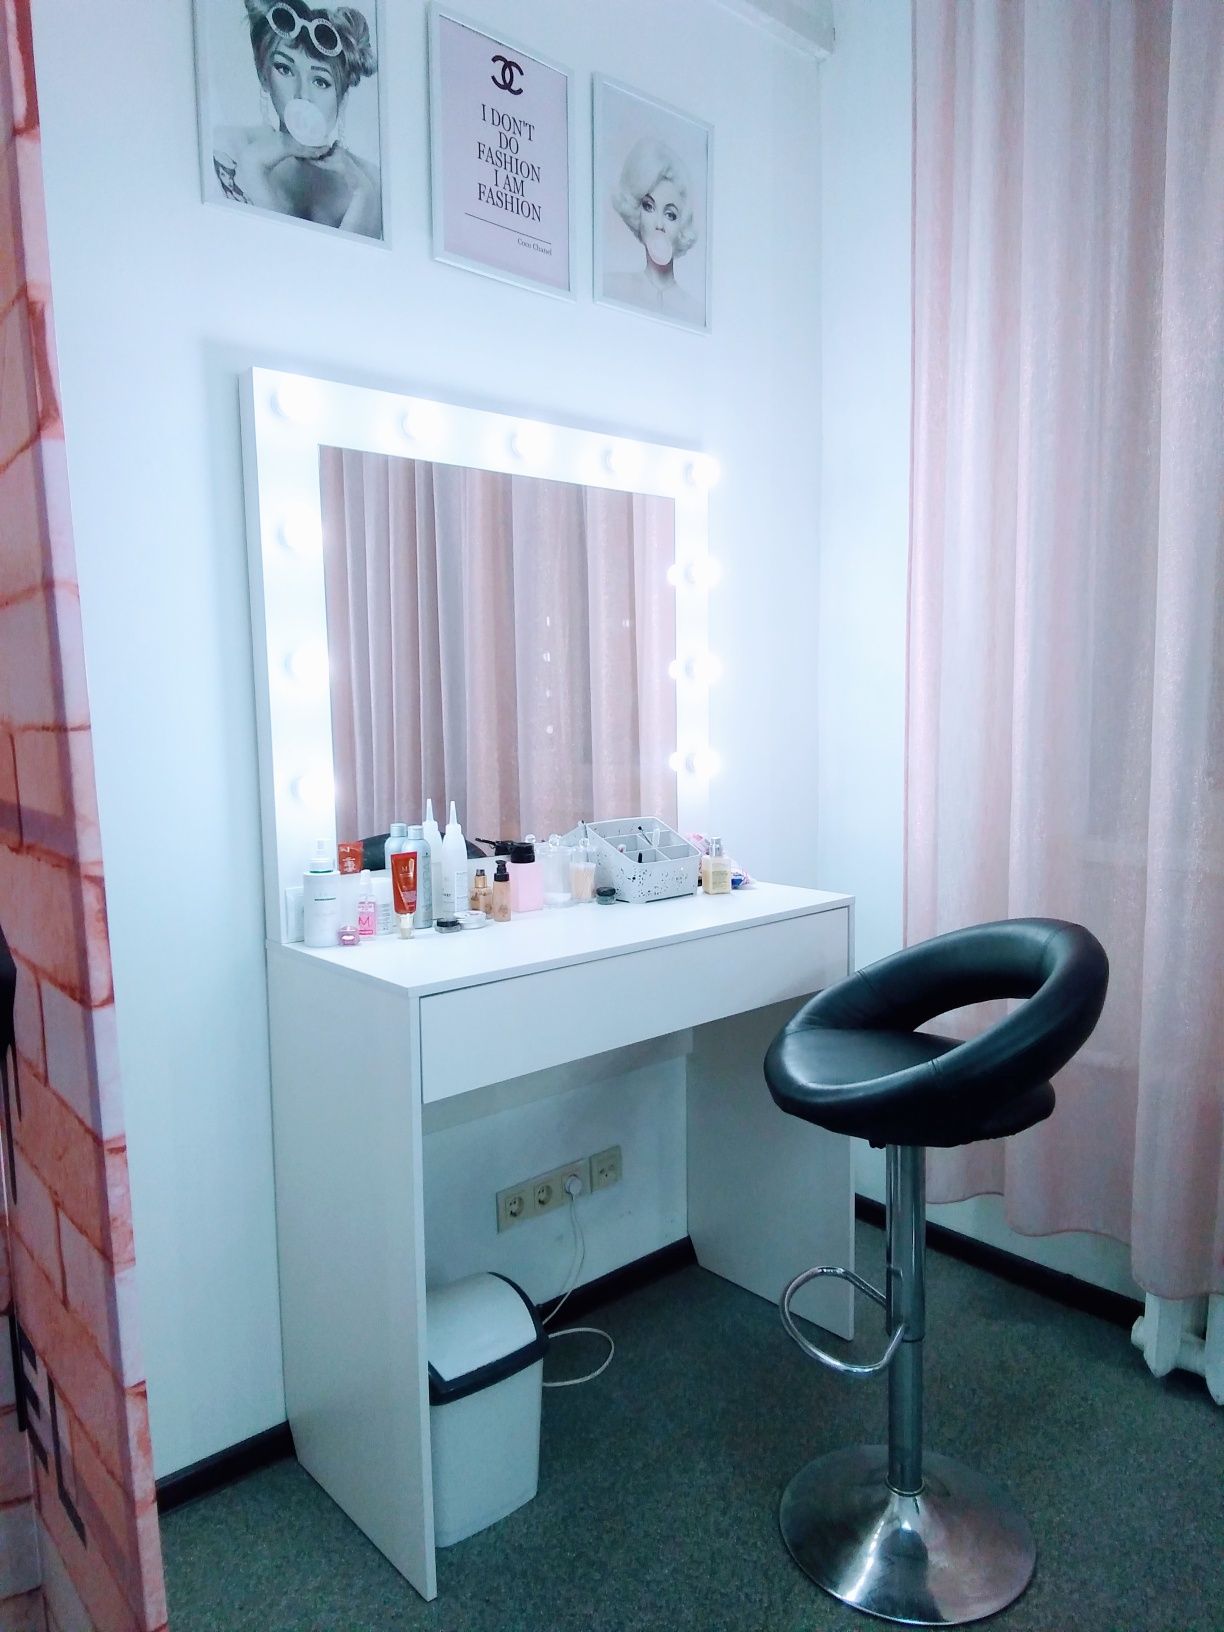 Визажный макияжный стол с круговым освещением